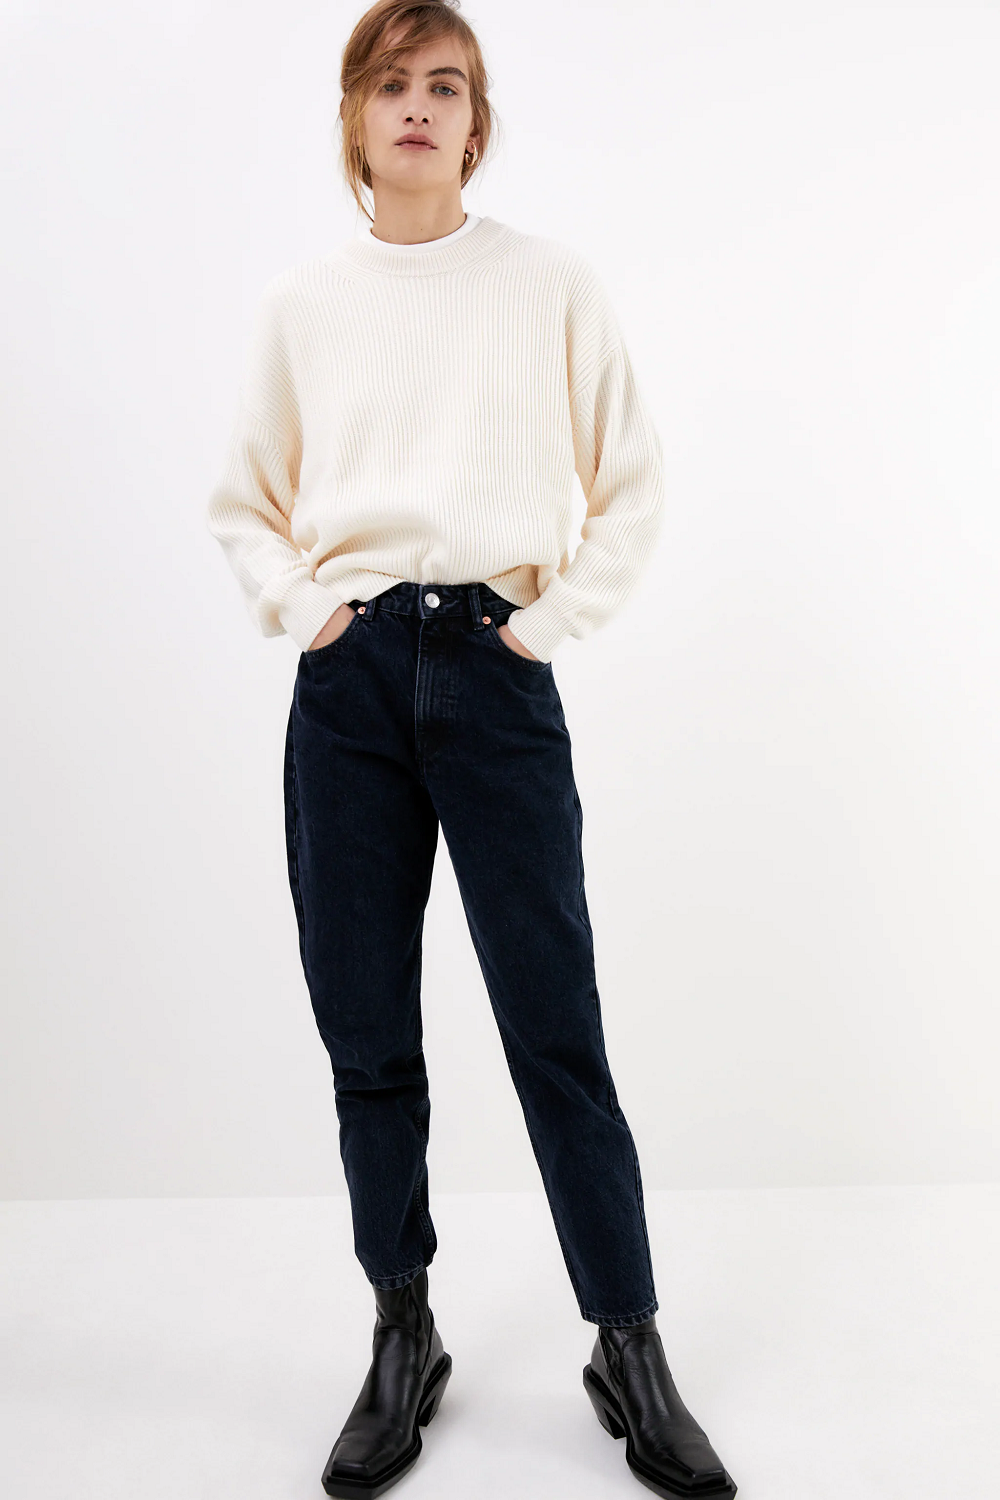 7 savršenih 'mom jeans' traperice Zara jesen zima 2020.